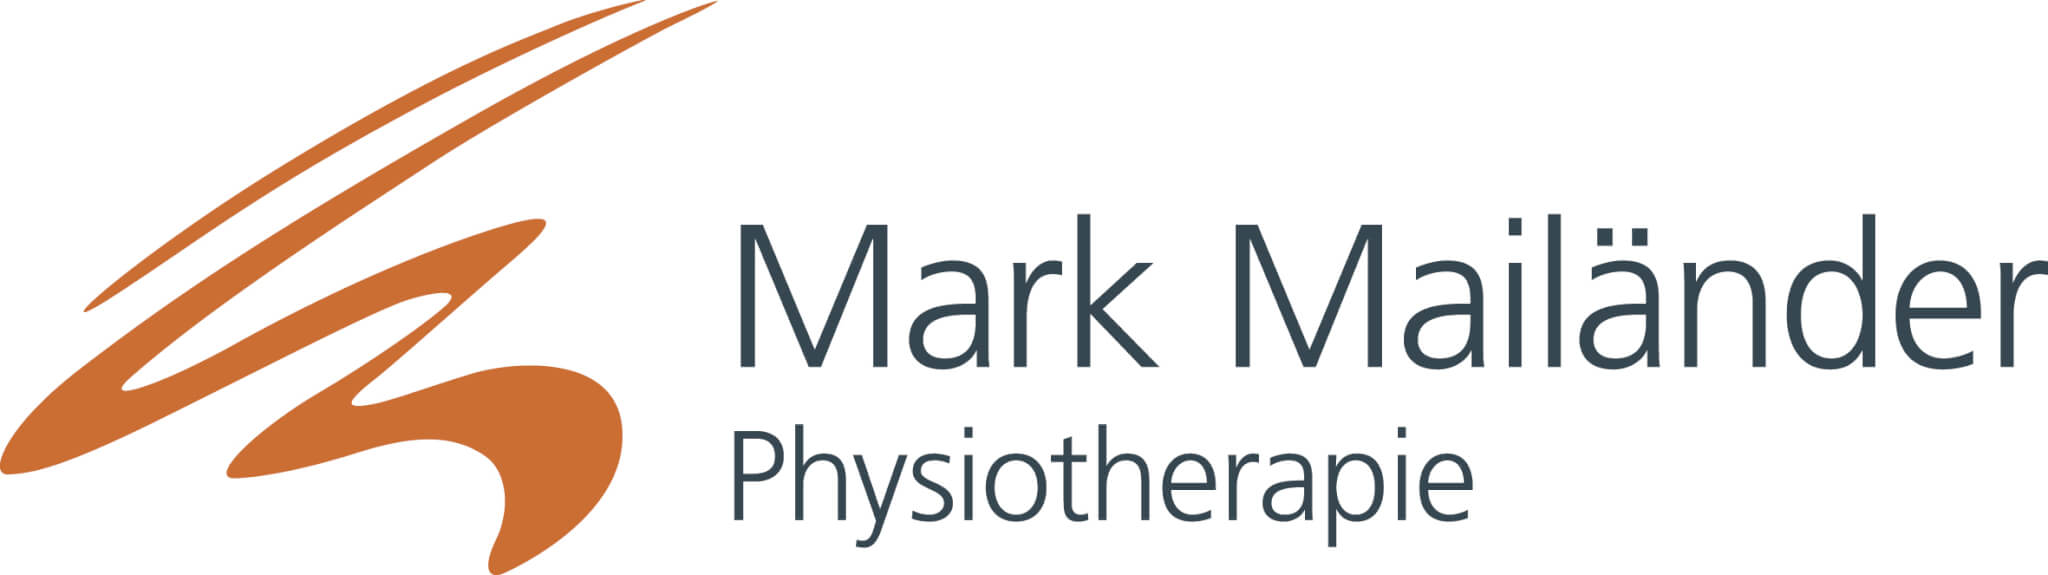 Partner Logo Mark Mailaender als Text ausgeschrieben